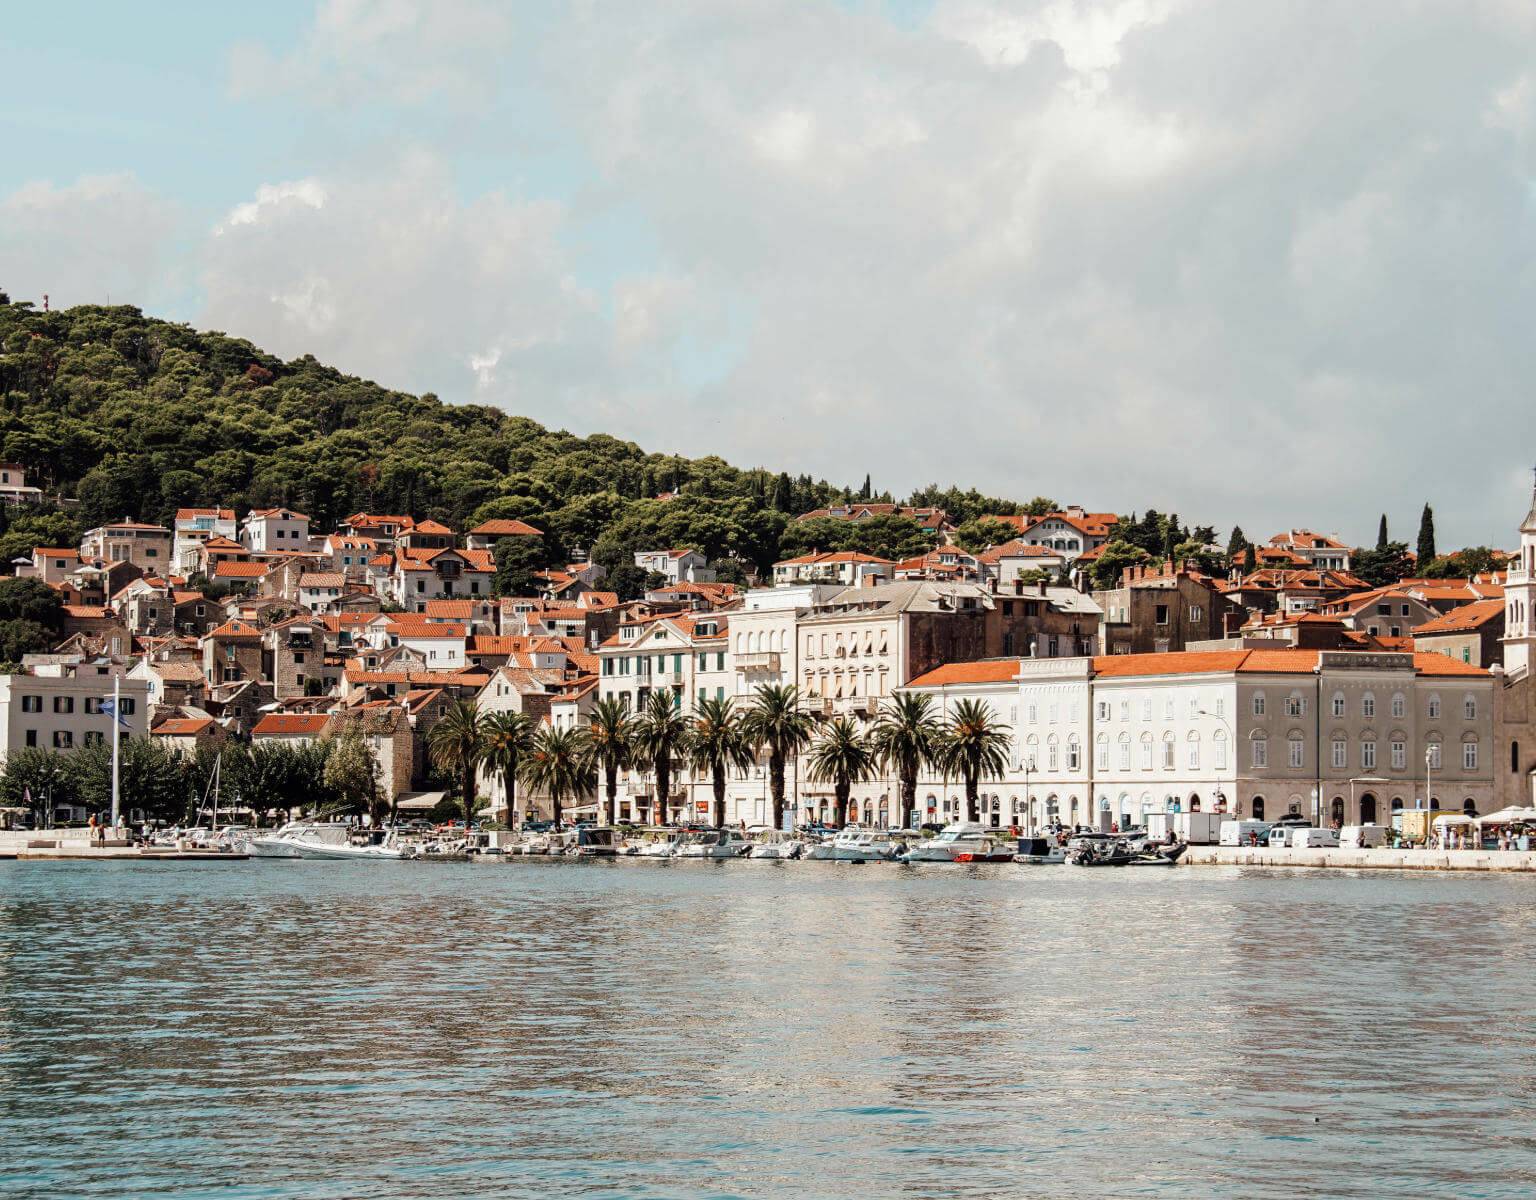 Blick über das Meer auf die mit Palmen gesäumte Uferpromenade der Altstadt von Split.